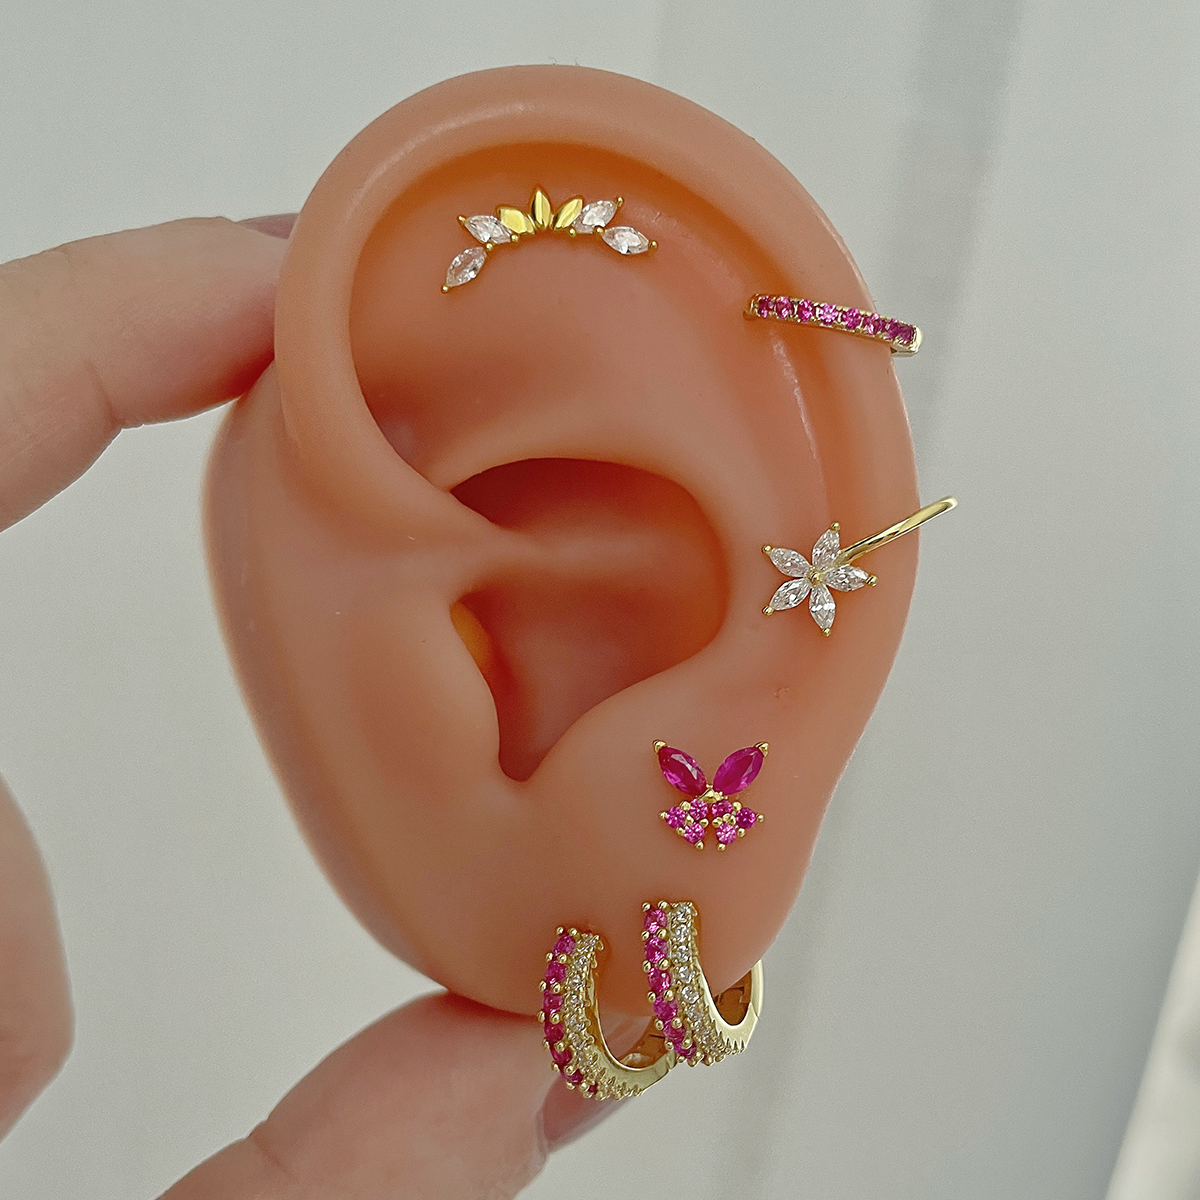 Pink Butterfly Earring